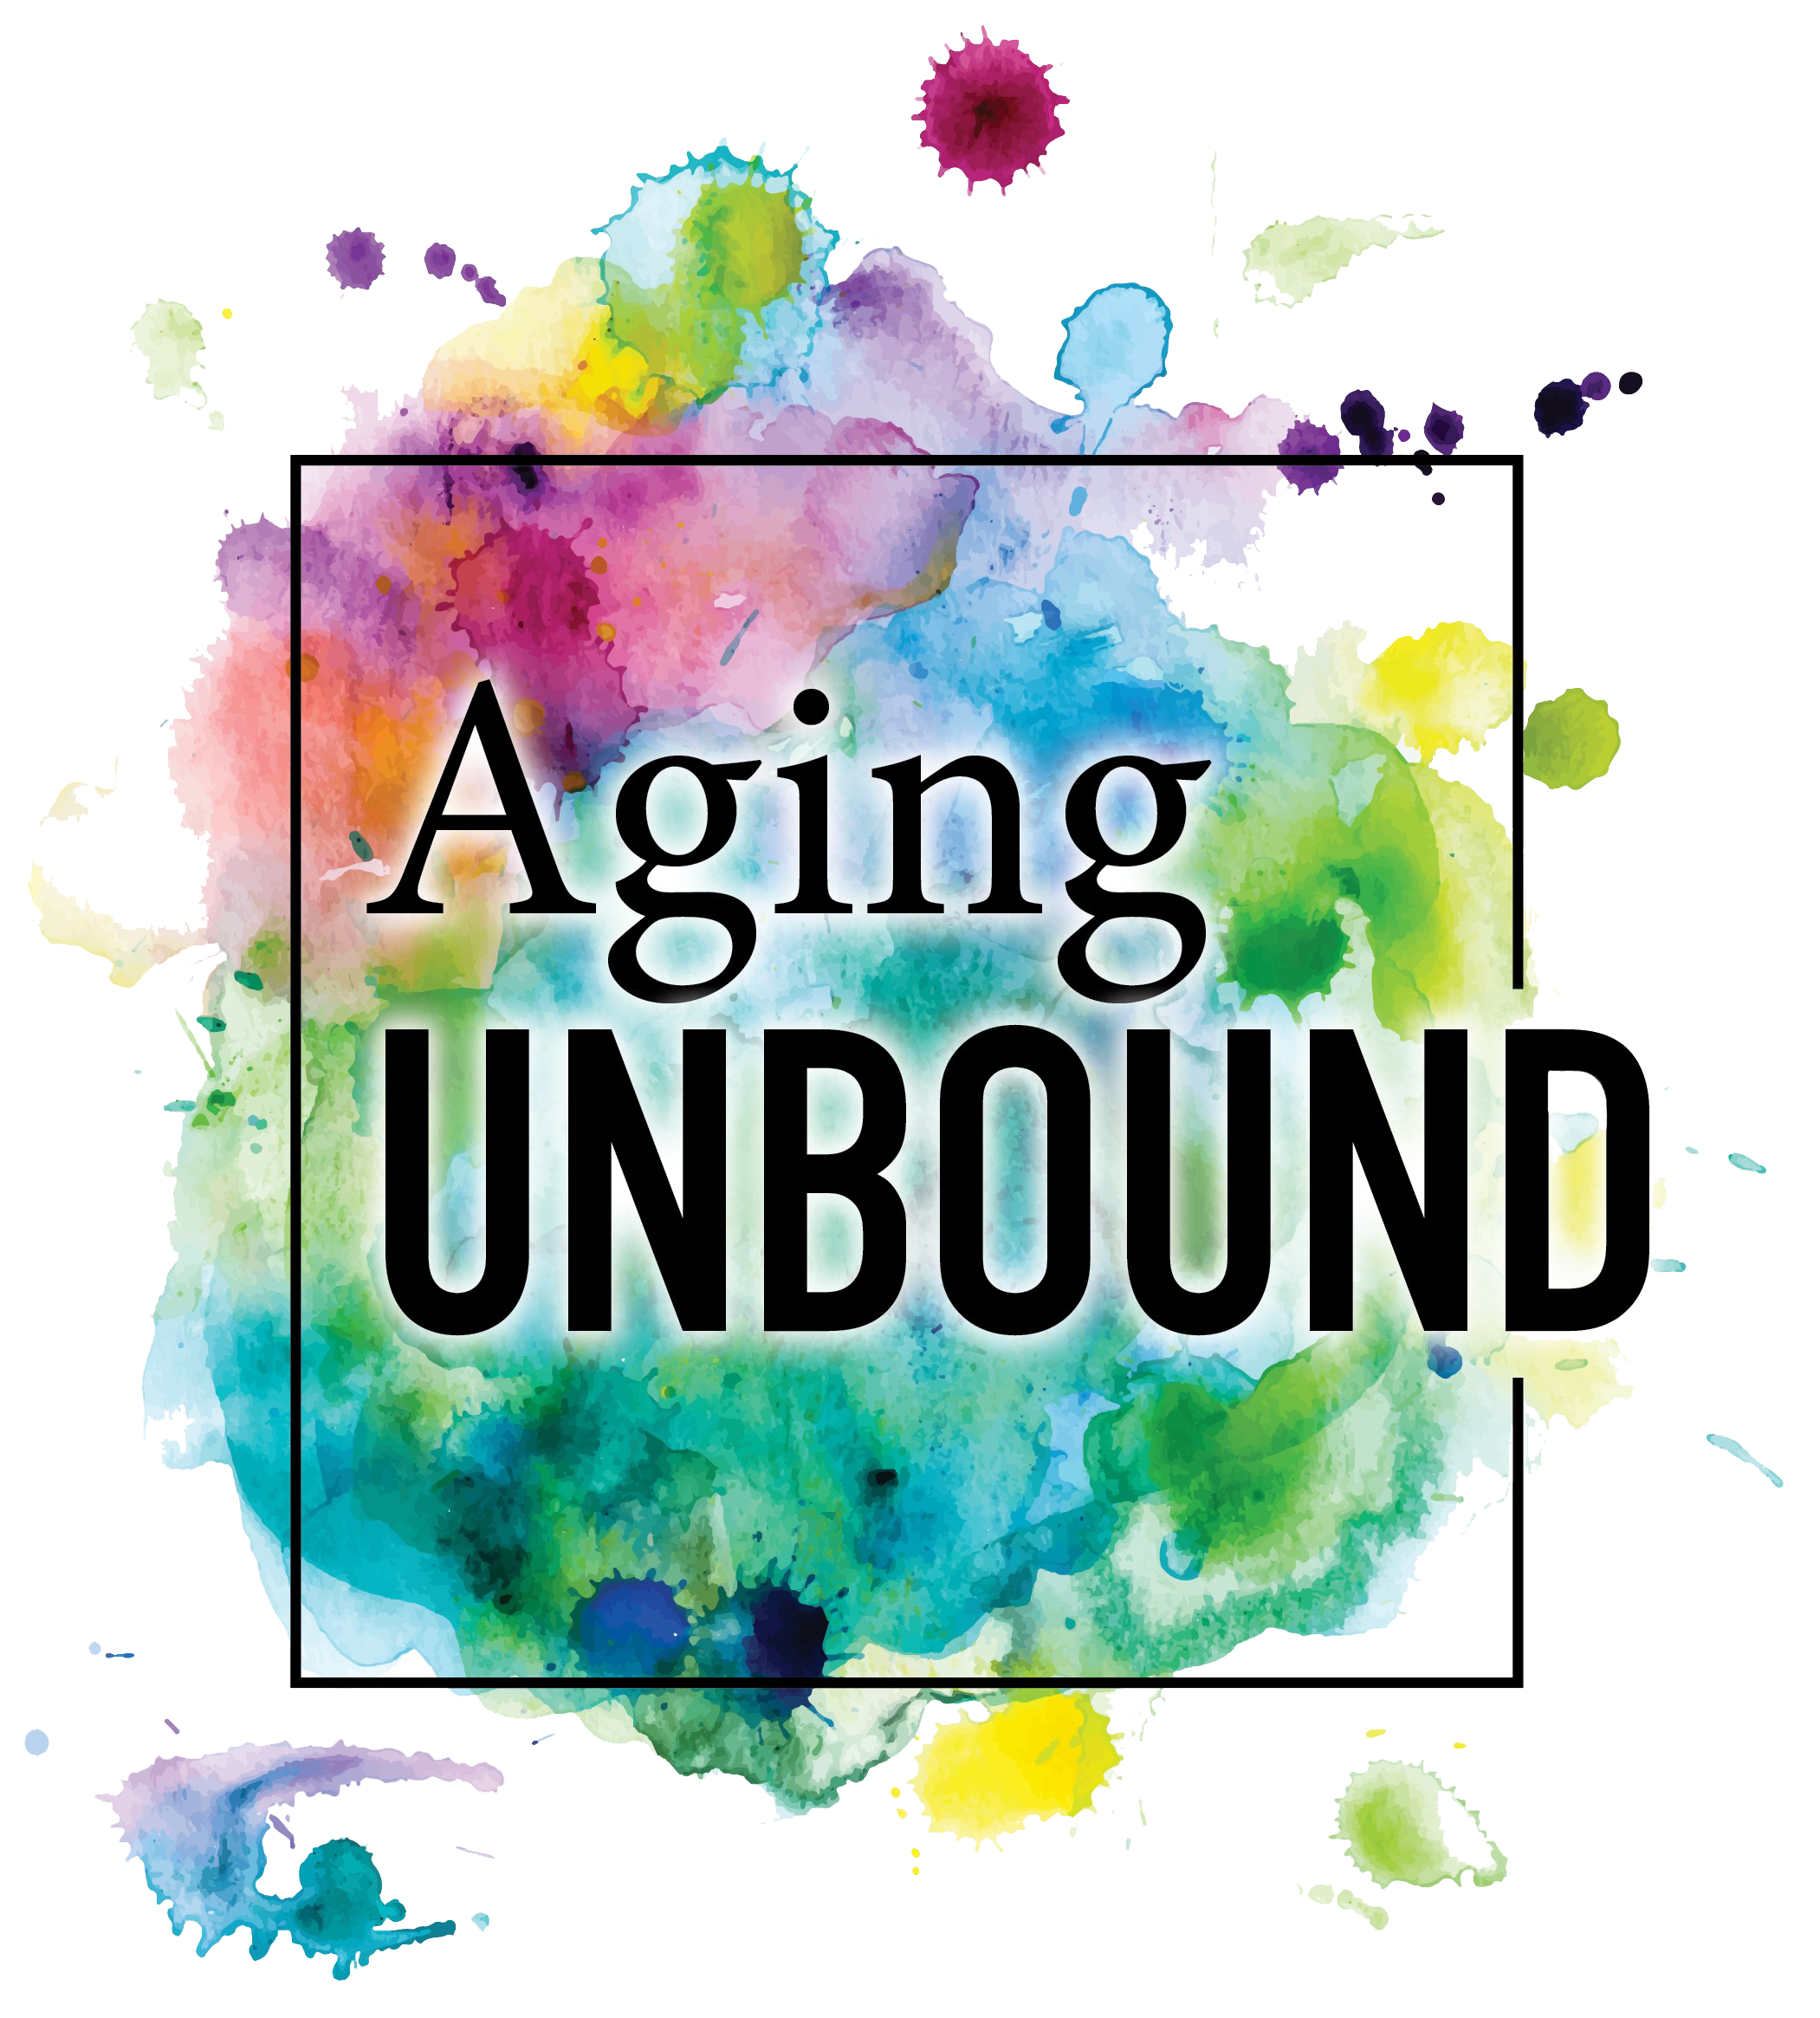 Aging Unbound